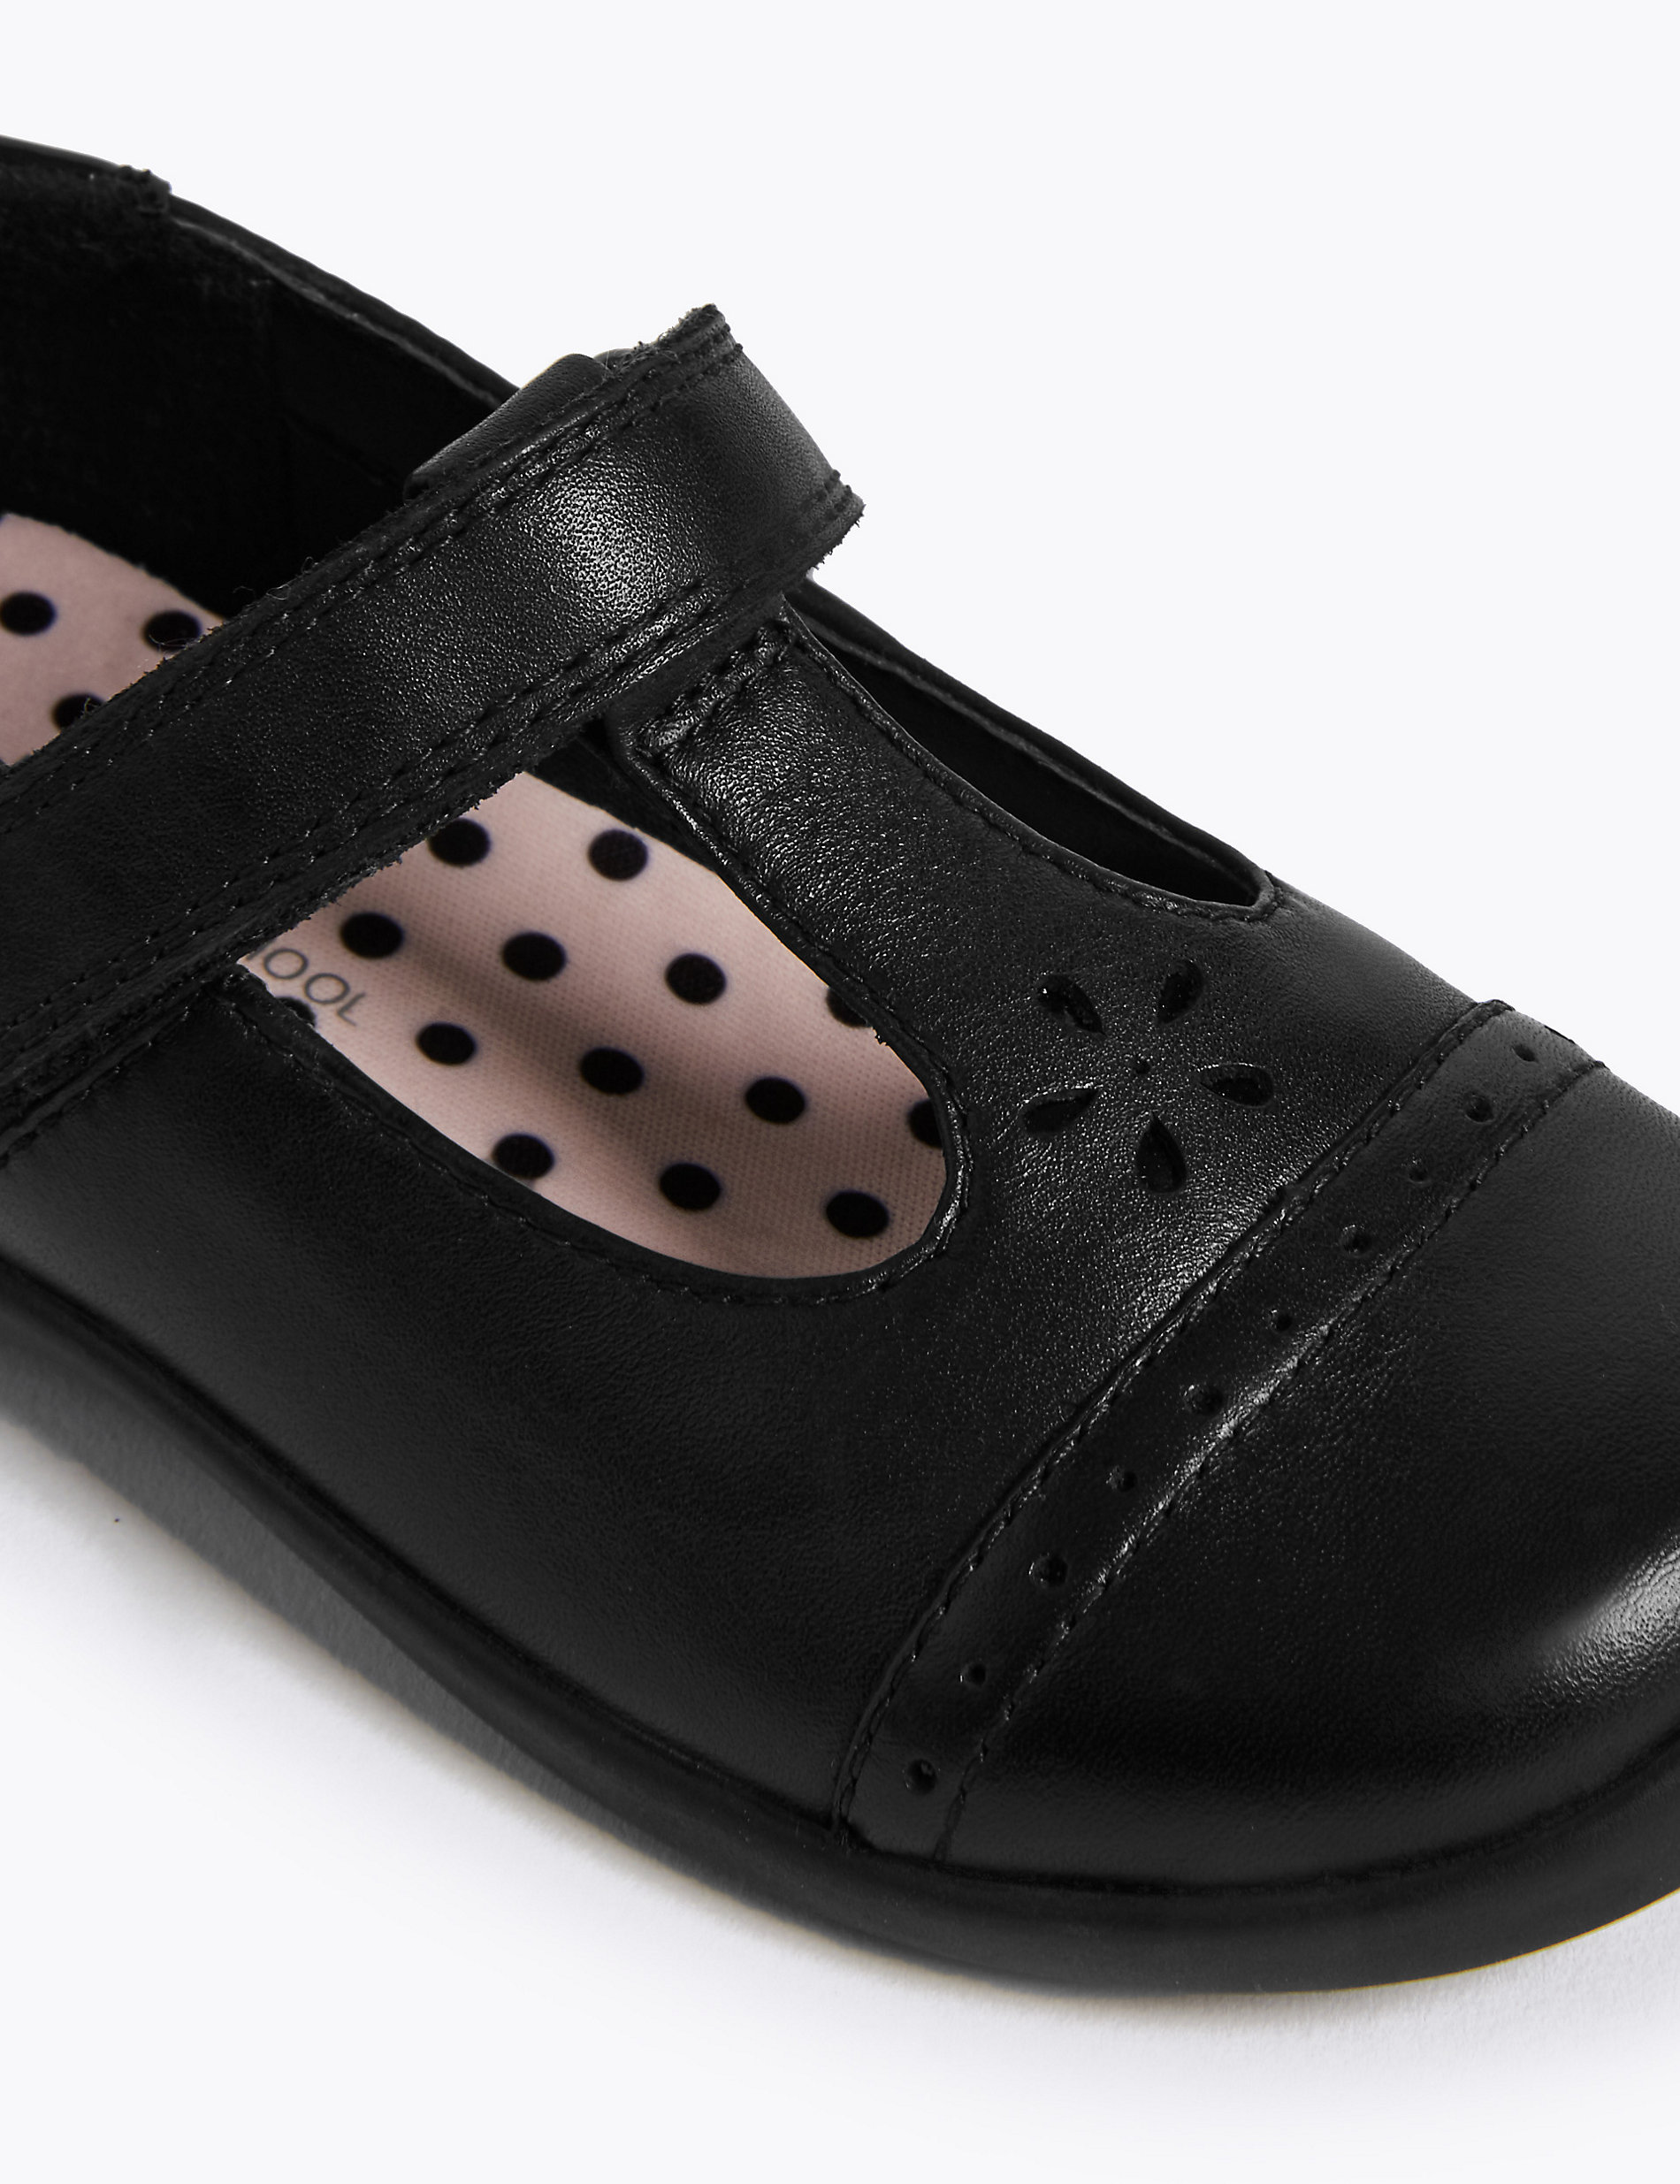 Παιδικά σχολικά παπούτσια από δέρμα με μπαρέτα Τ (8 Small - 1 Large)